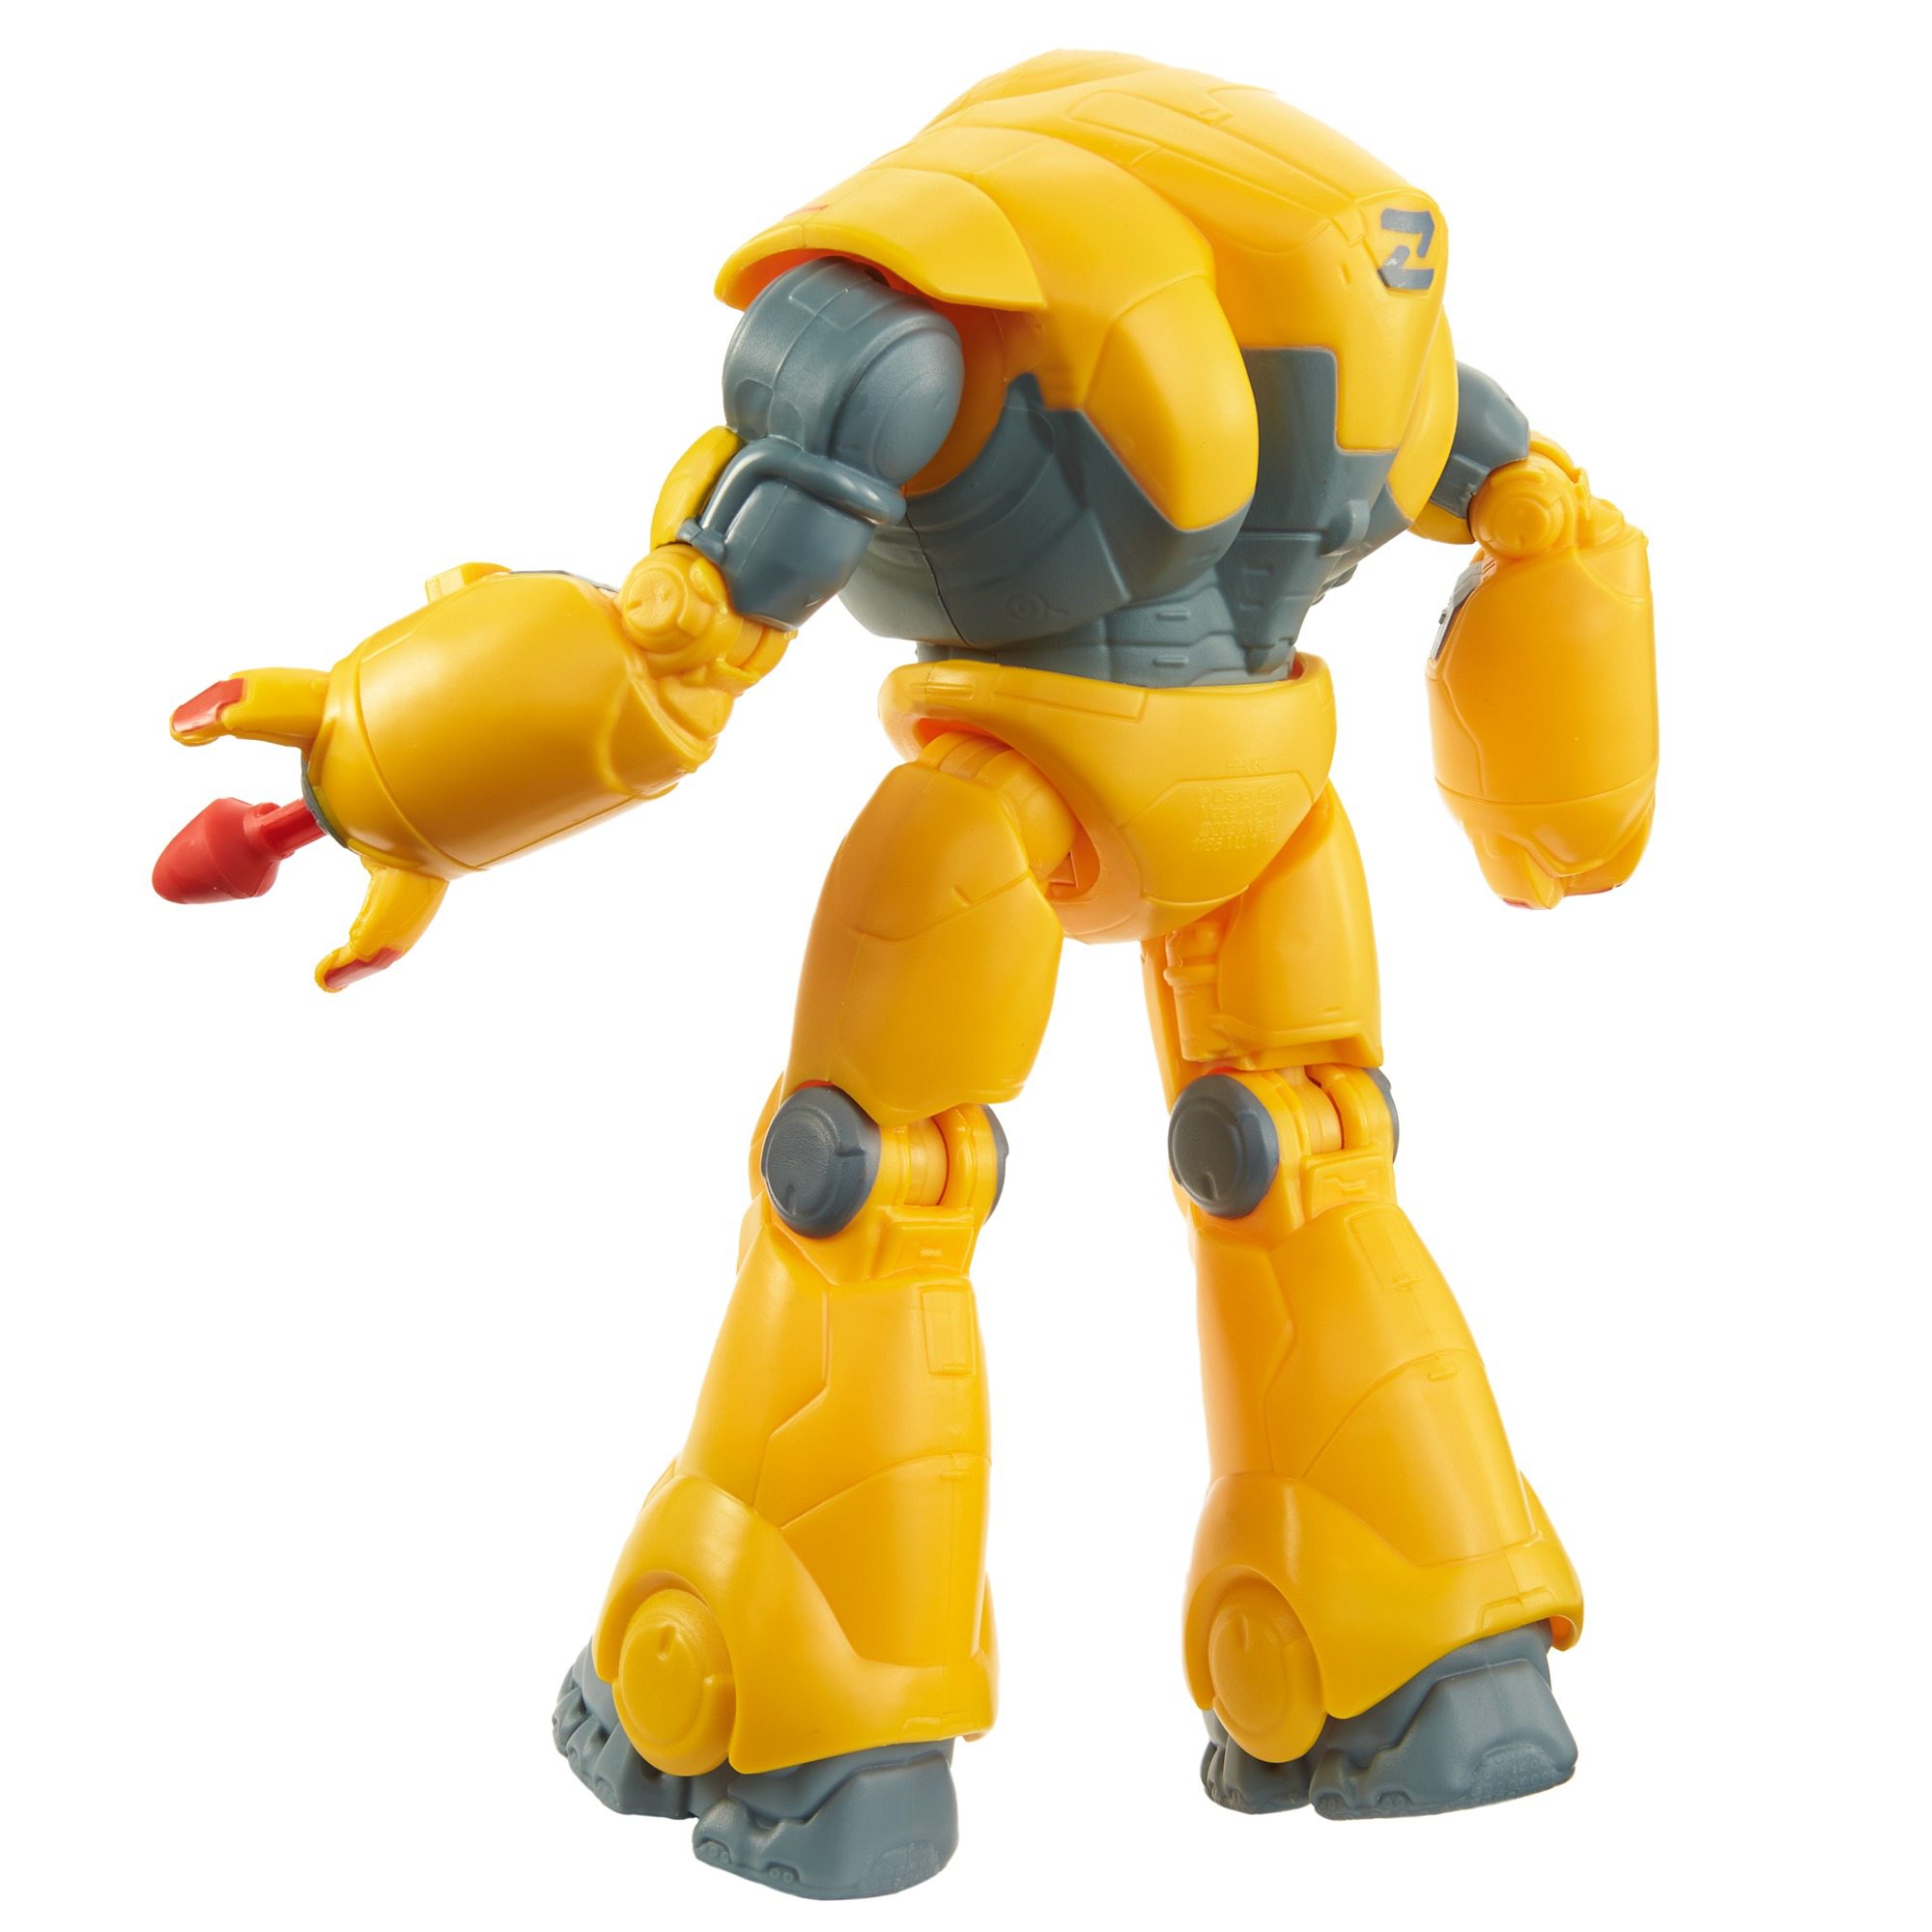 Disney pixar lightyear - zyclops personaggio equipaggiato per la battaglia, giocattolo per bambini 4+ anni, hhj87 - Lightyear